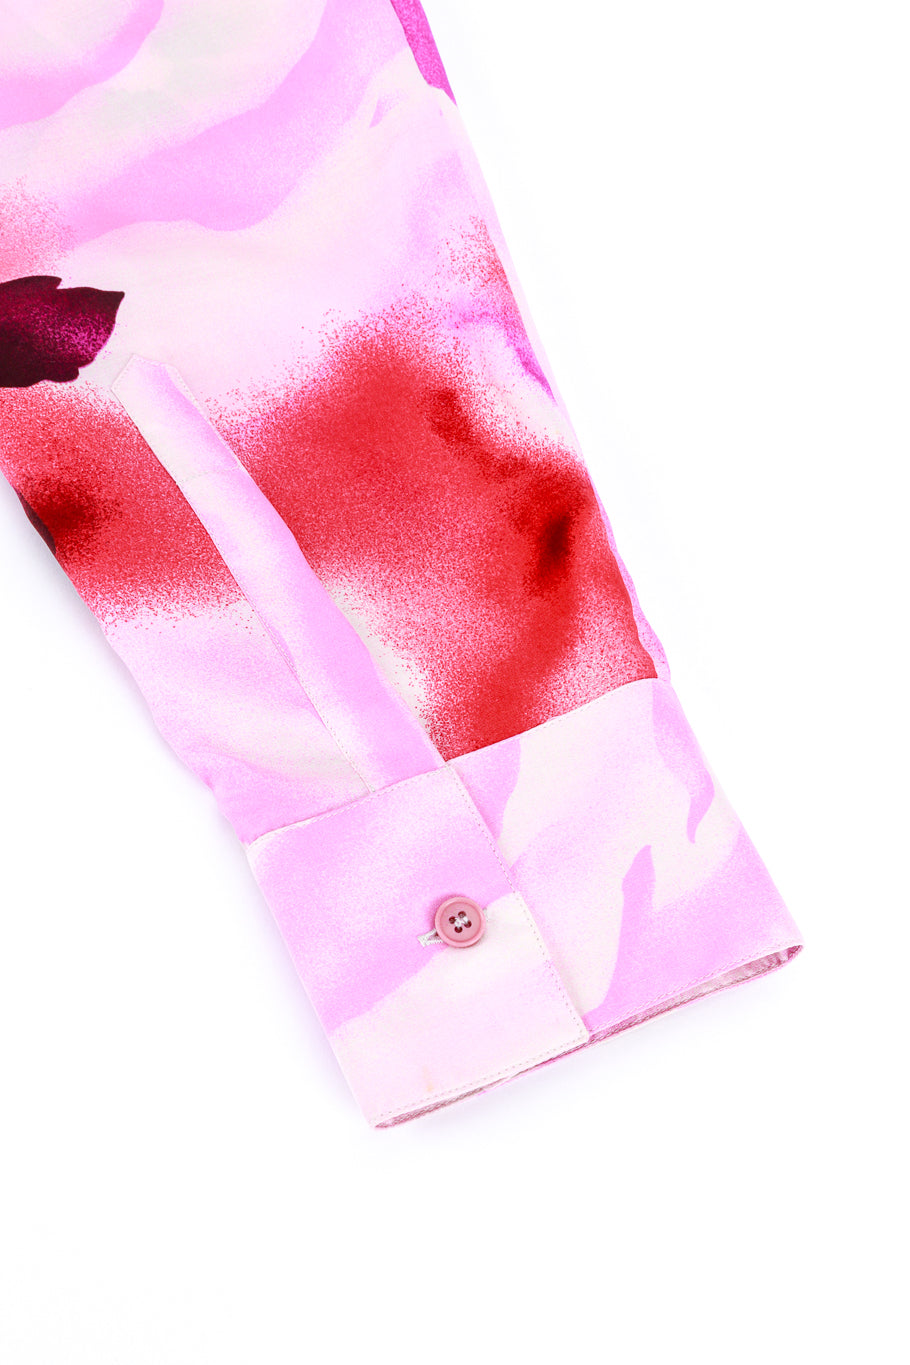 Vintage Versace Rose Print Blouse shirt cuff detail  @RECESS LA